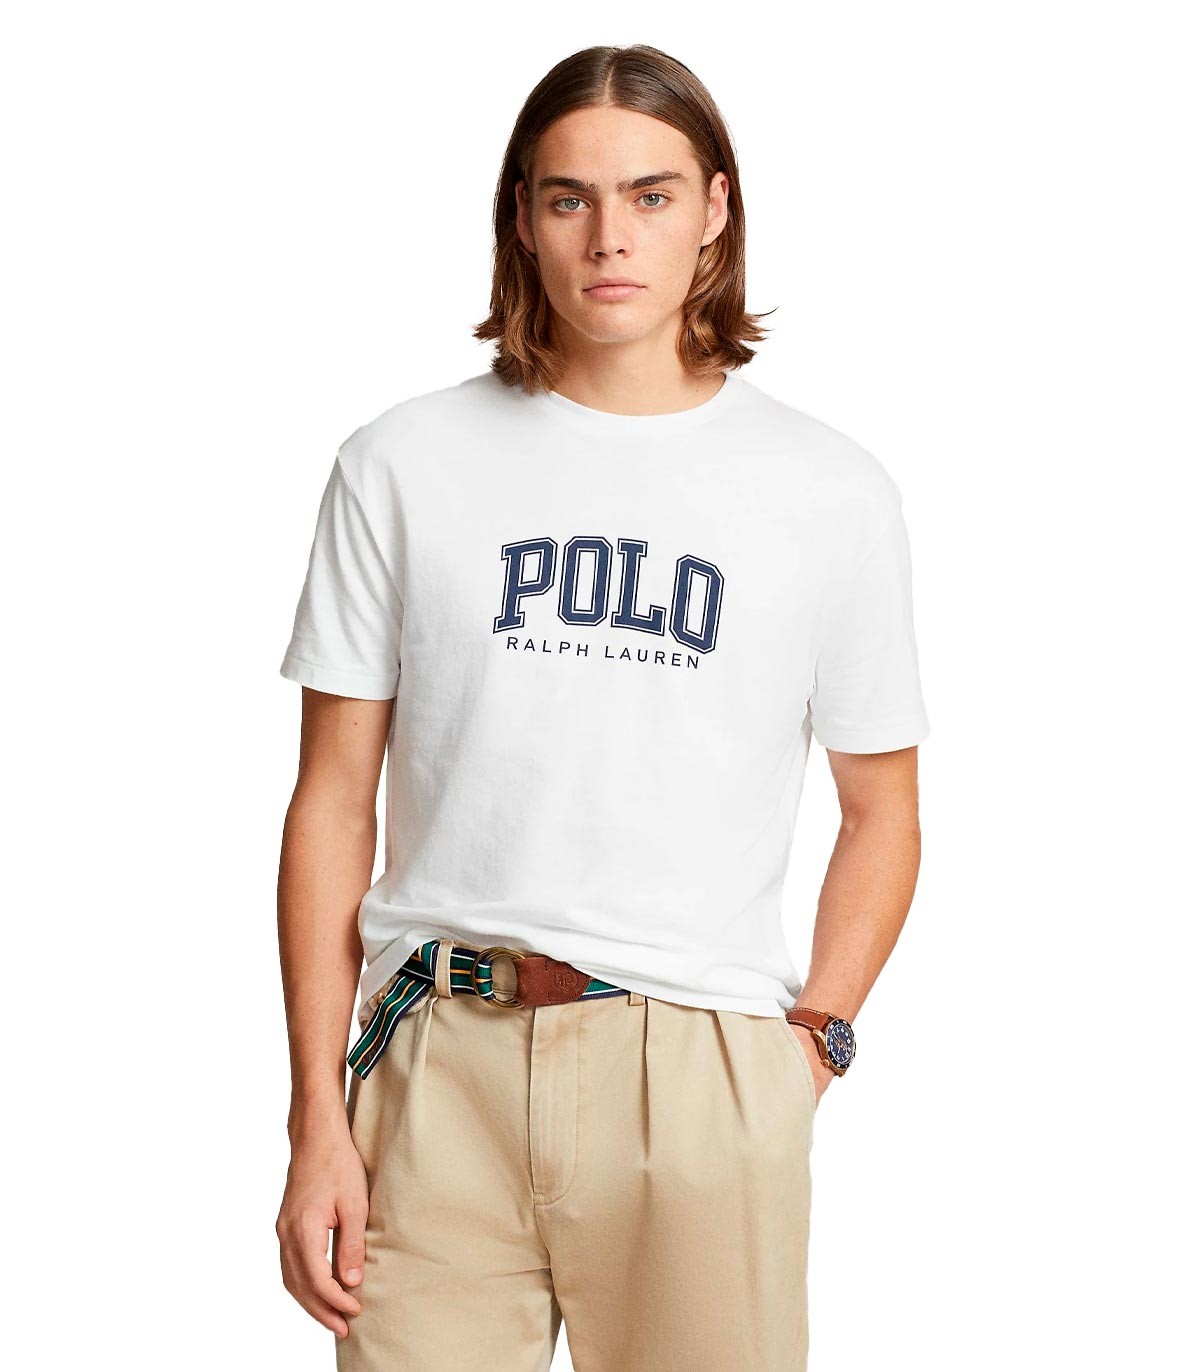 Polo Ralph Lauren - Camiseta Con Estampado - Blanco